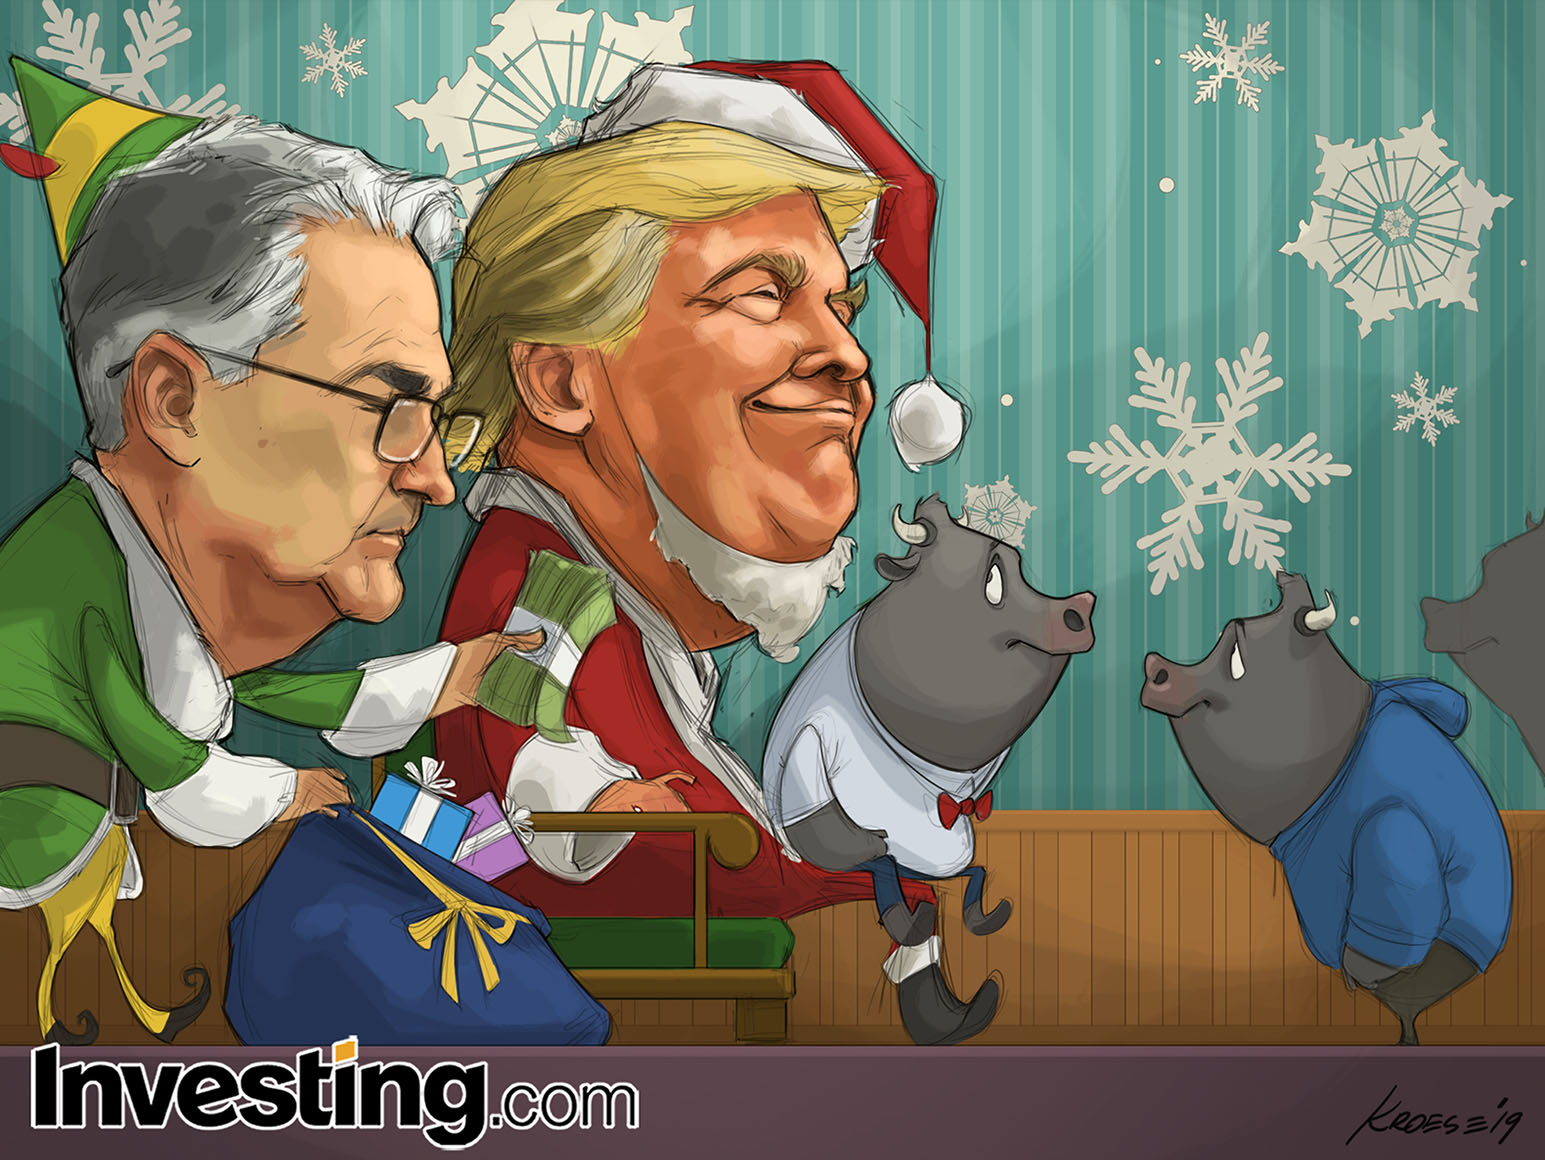 מערכת Investing.com מאחלת לקוראינו חג שמח!